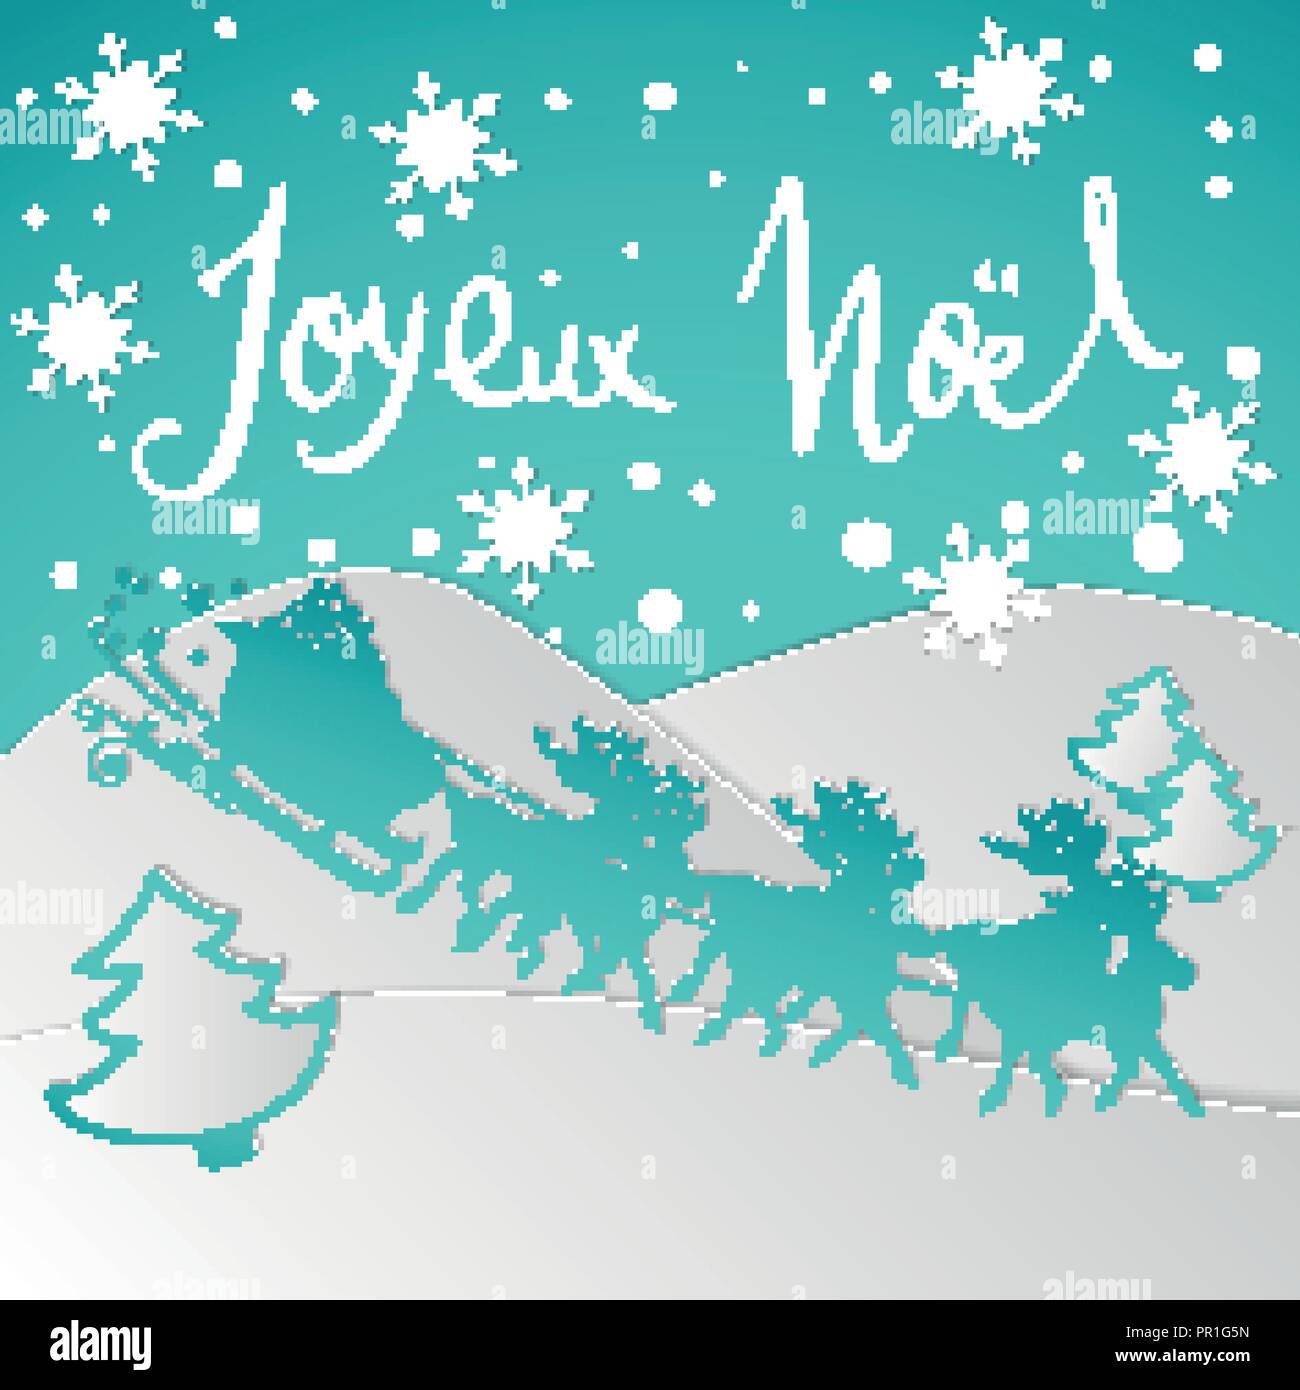 Buon Natale Francia.Il Francese Buon Natale Carta In Stile Origami Scheda Vettore Completo Immagine E Vettoriale Alamy